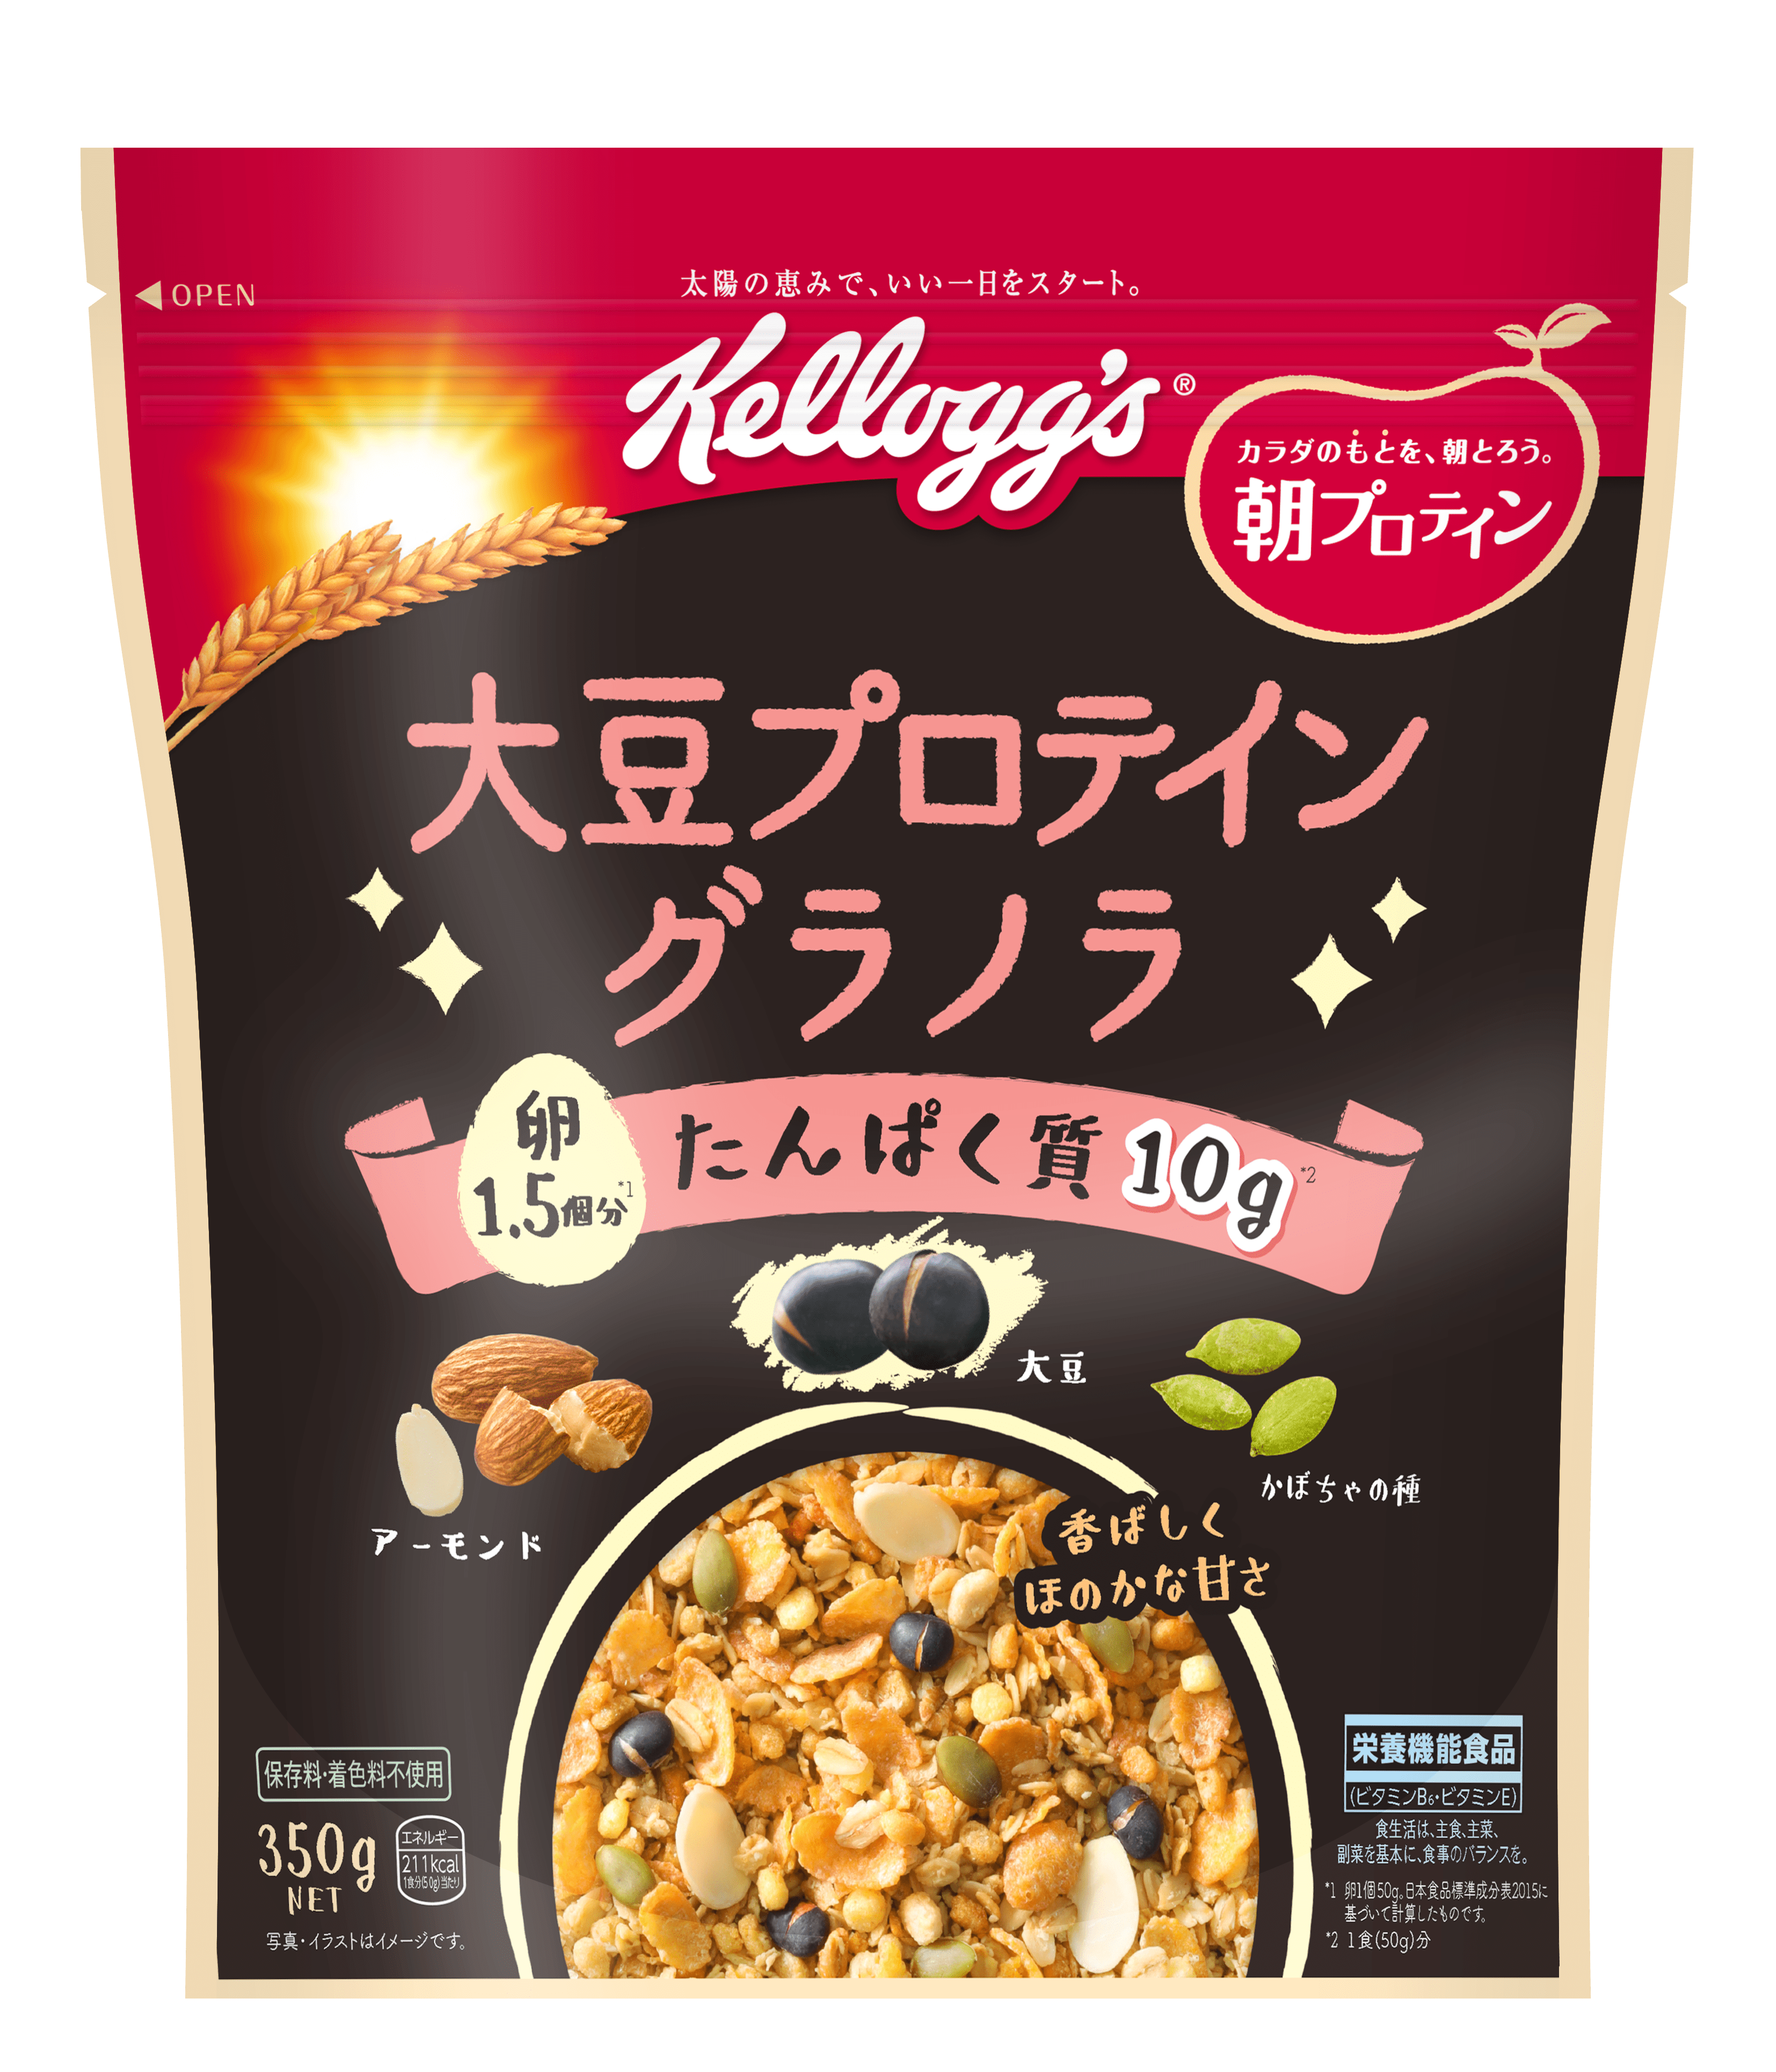 カラダのもとを朝とろう 朝プロテイン ケロッグ 大豆プロテイン グラノラ 新発売 日本ケロッグ合同会社のプレスリリース